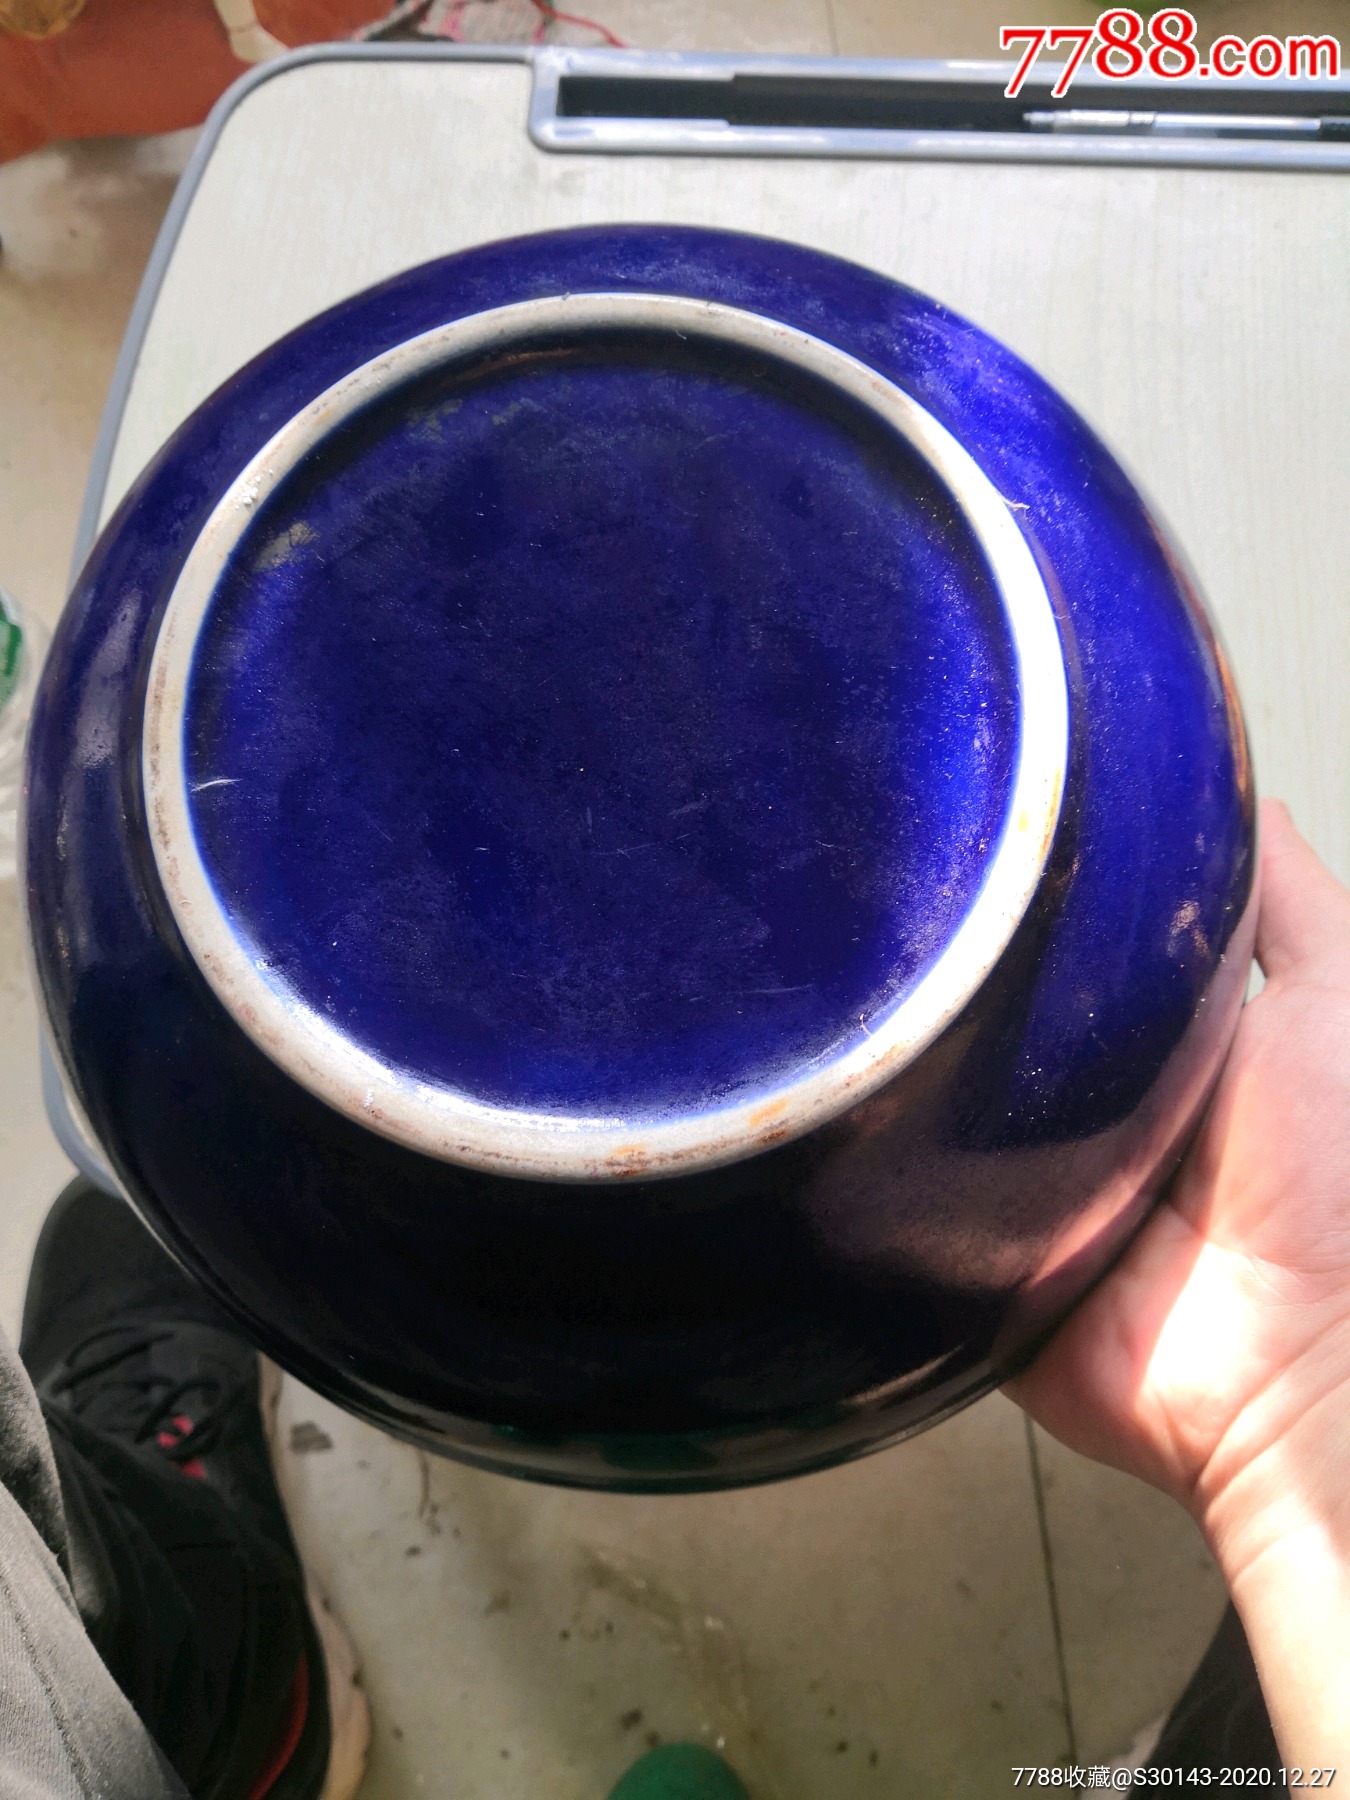 清代民窑瓷器霁蓝釉图片